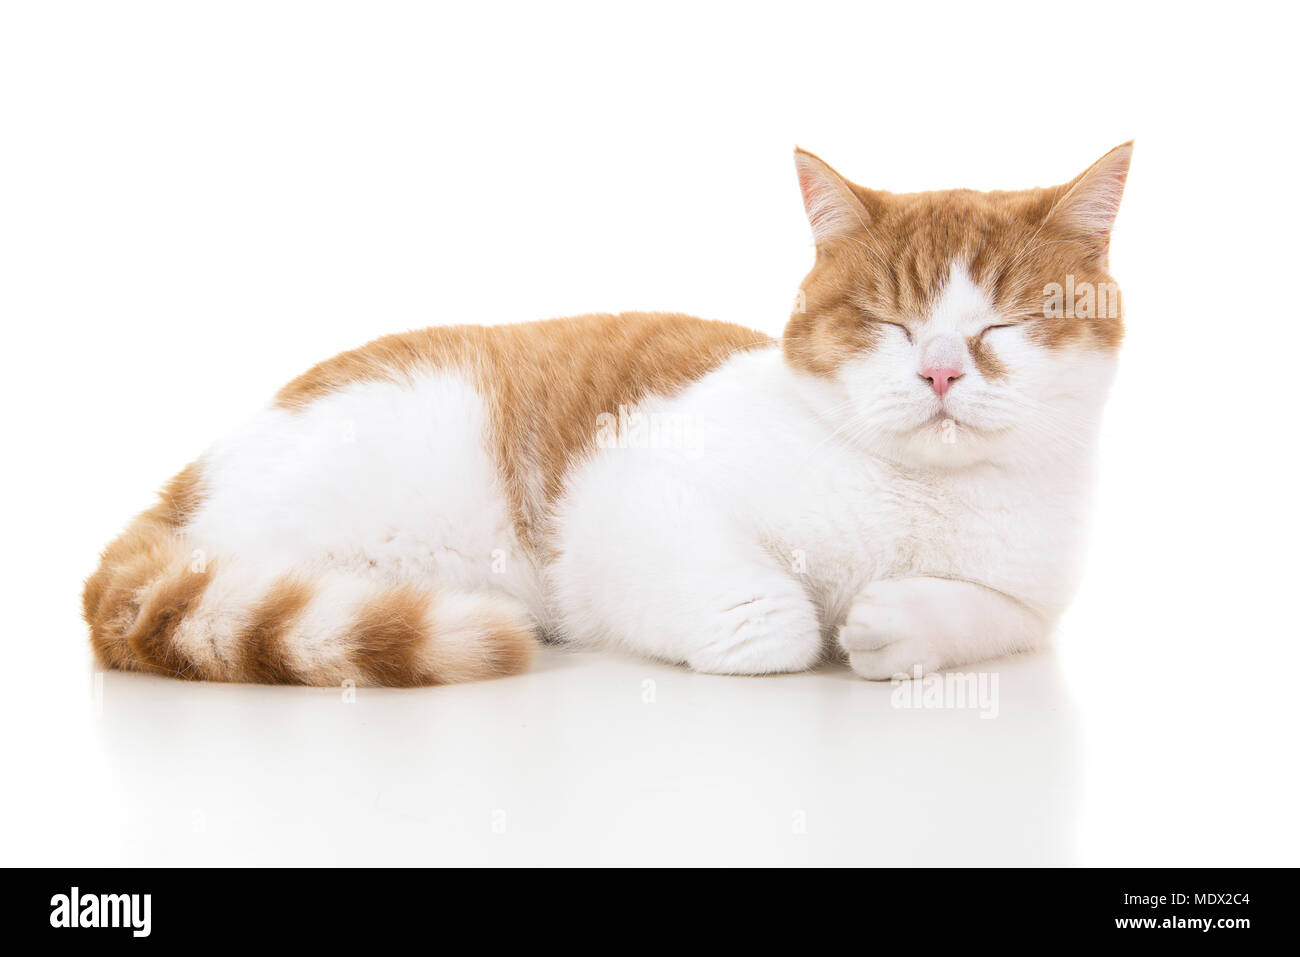 Le rouge et le blanc British shorthair cat vu de profil couché dormir avec les yeux fermés sur un fond blanc Banque D'Images